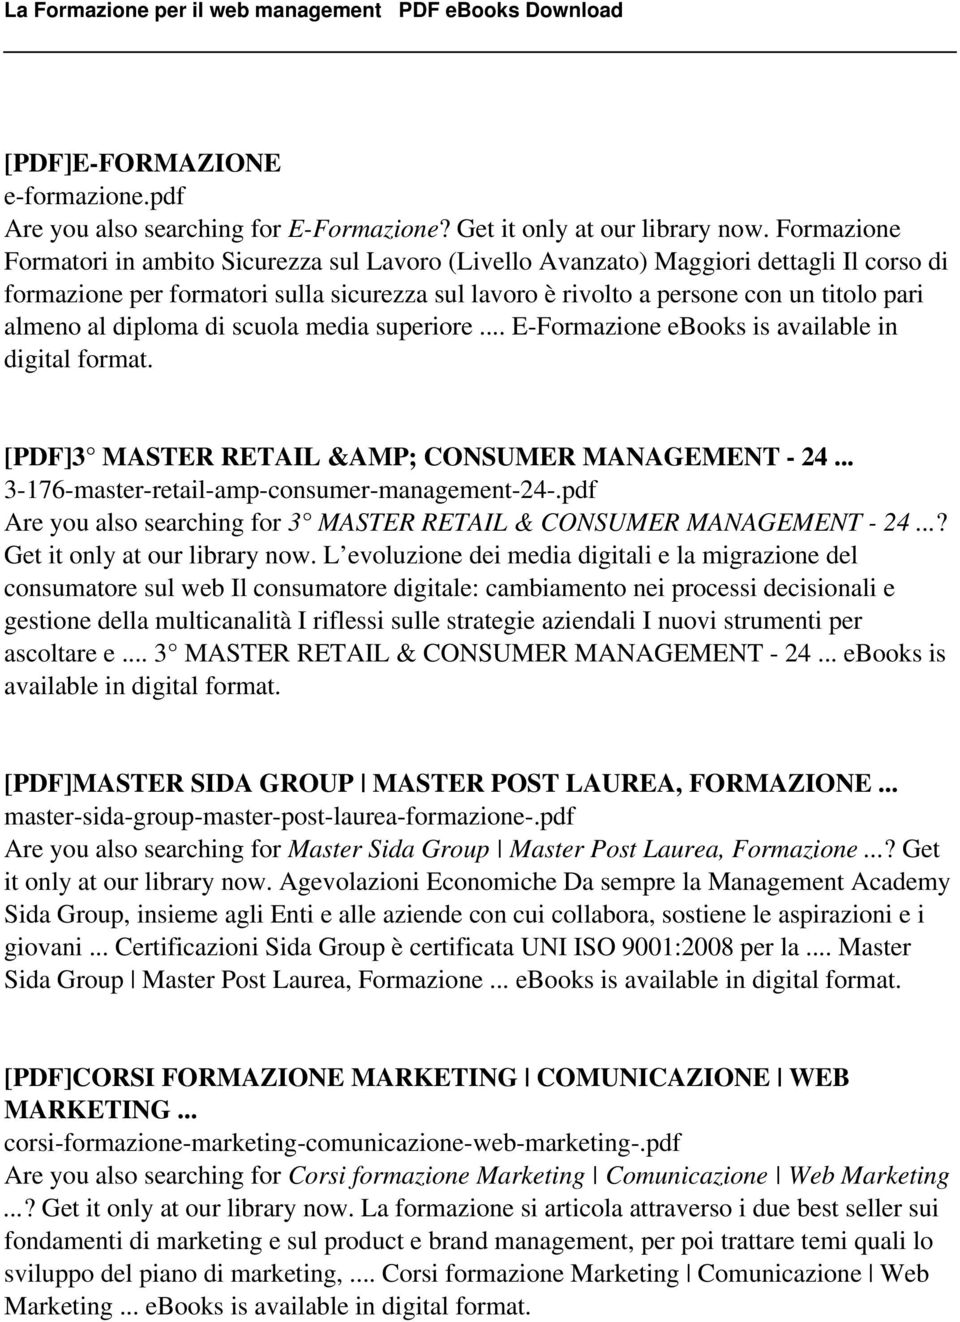 al diploma di scuola media superiore... E-Formazione ebooks is available in [PDF]3 MASTER RETAIL &AMP; CONSUMER MANAGEMENT - 24... 3-176-master-retail-amp-consumer-management-24-.